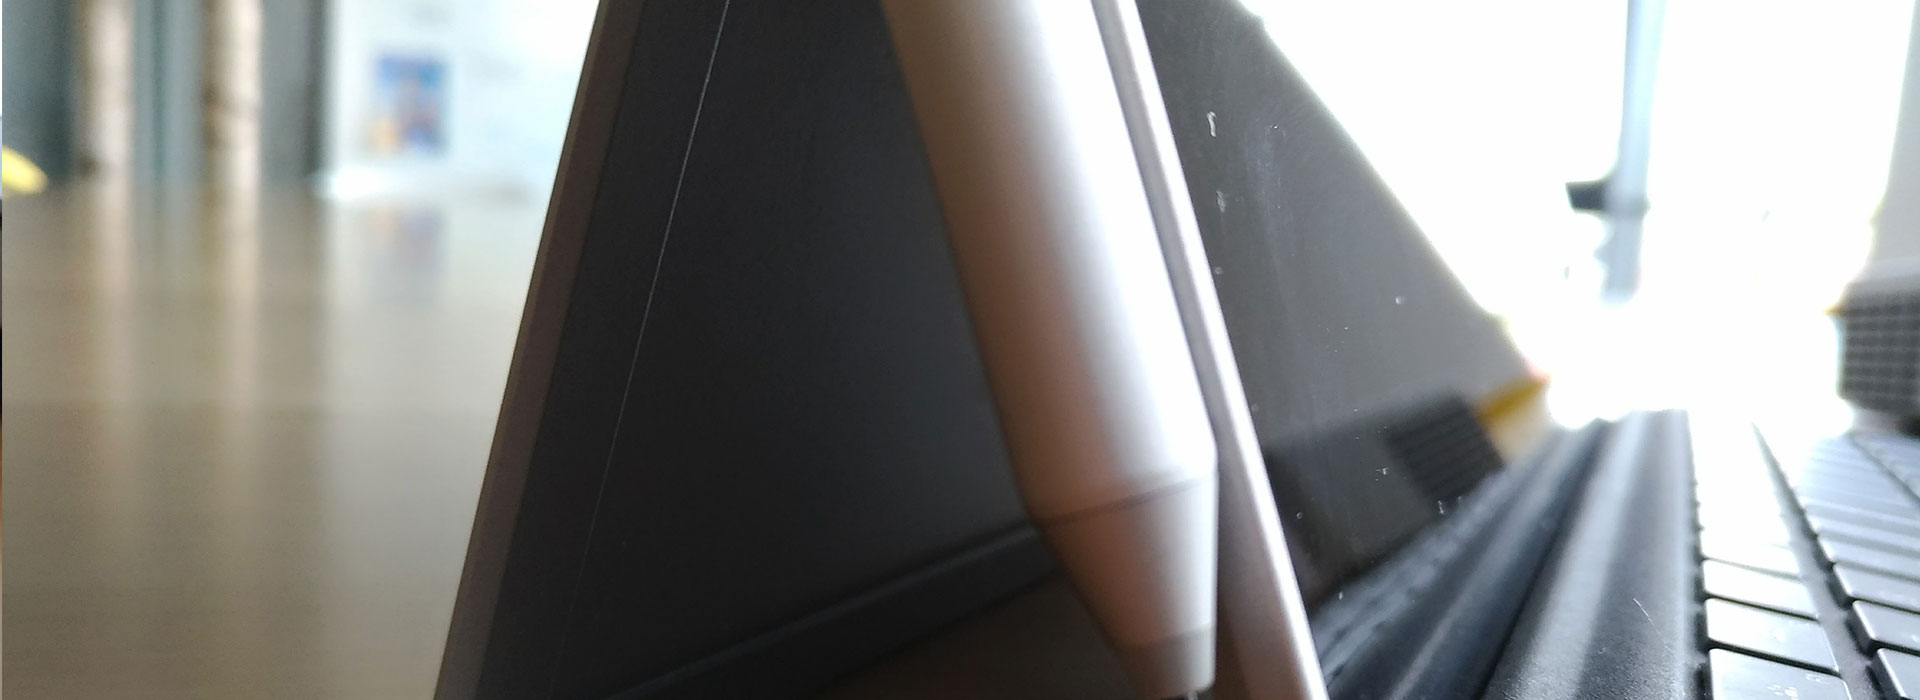 [PL] Surface 4 Pro – sprzęt do codziennej pracy?!